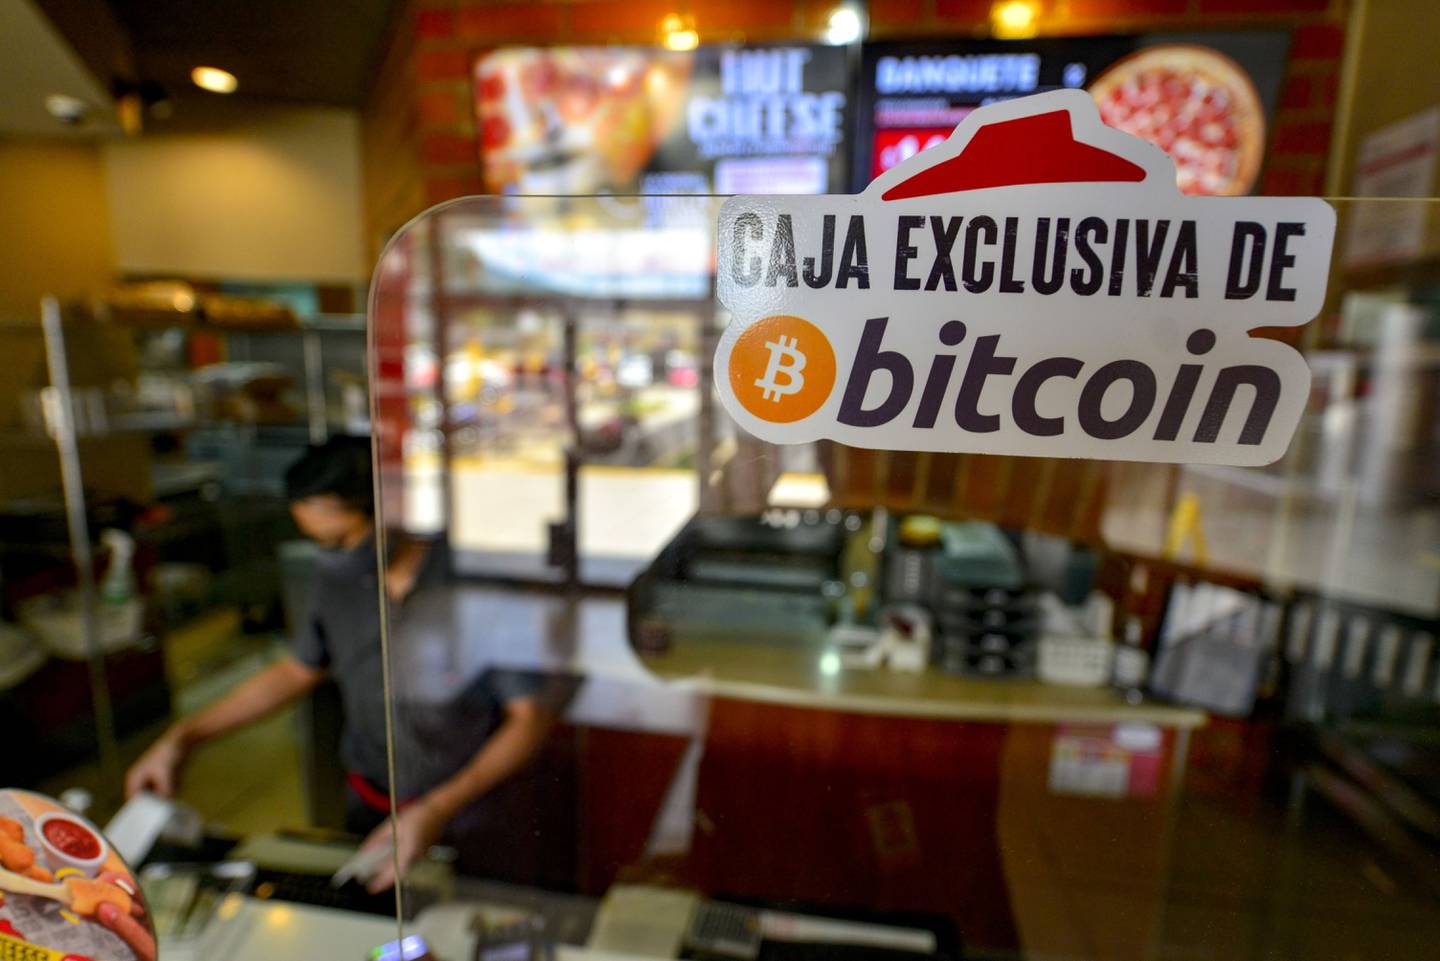 Un restaurante de Pizza Hut que acepta bitcoin como método de pago, en San Salvador, El Salvador, el jueves 9 de septiembre de 2021.dfd